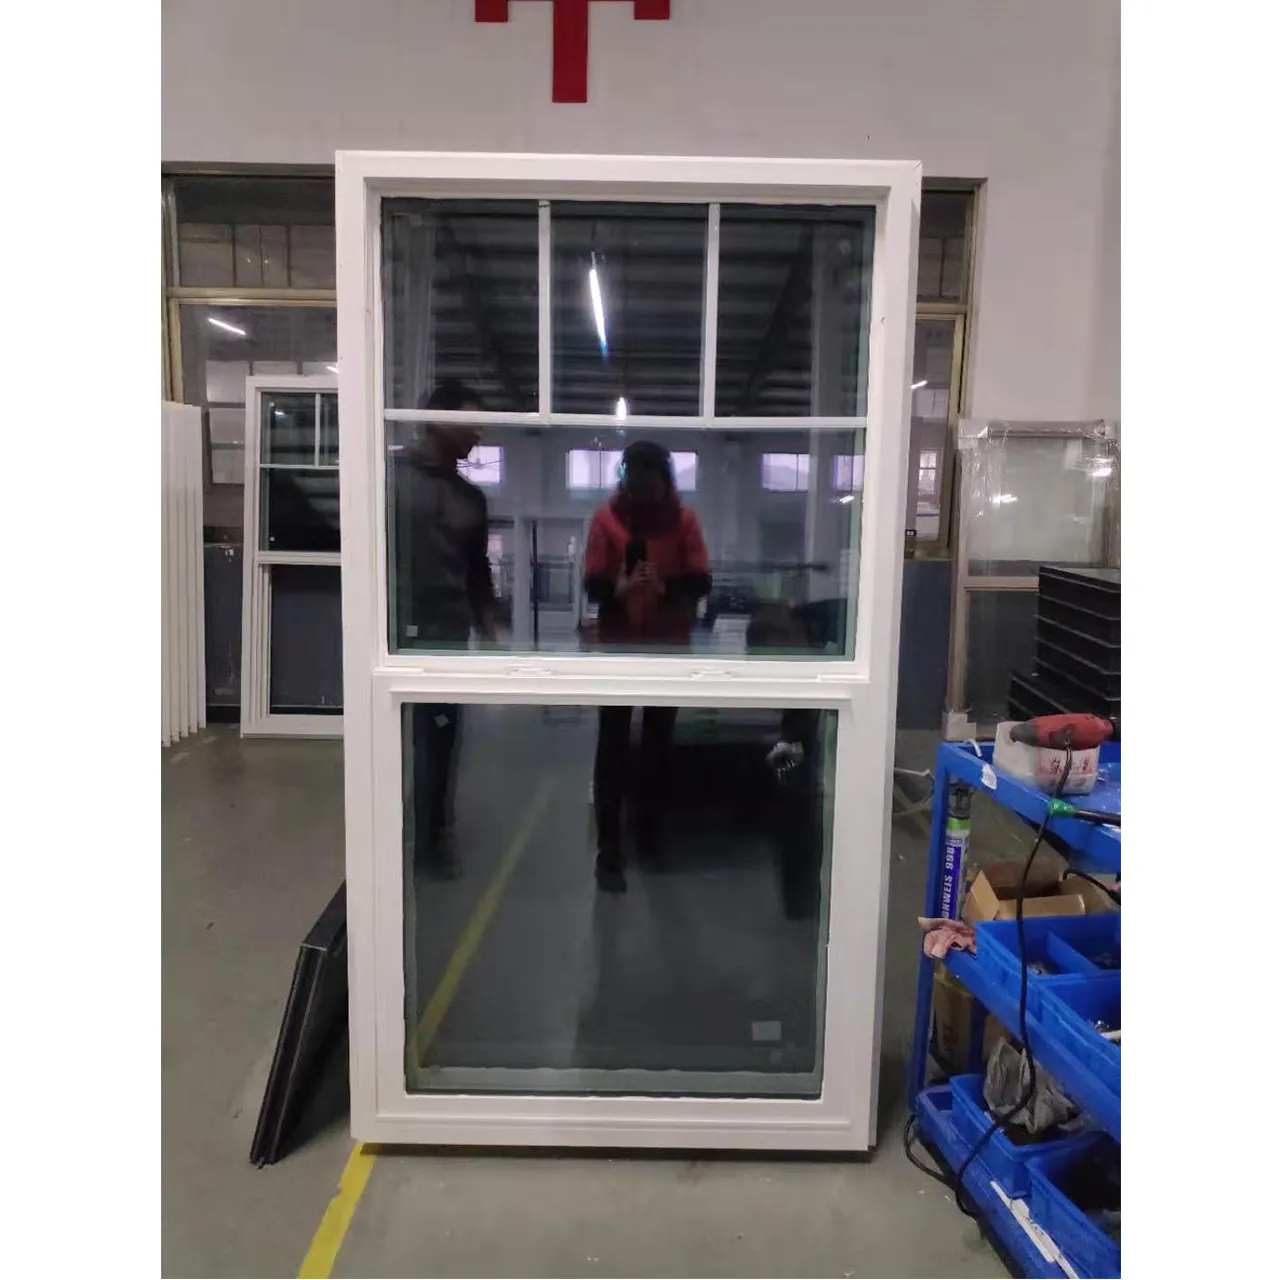 أمريكا الشمالية الفينيل weika نافذة واحدة معلقة نافذة عمودية منزلقة محارة العلامة التجارية pvc نافذة الصين مصنع pvc نوافذ معلقة